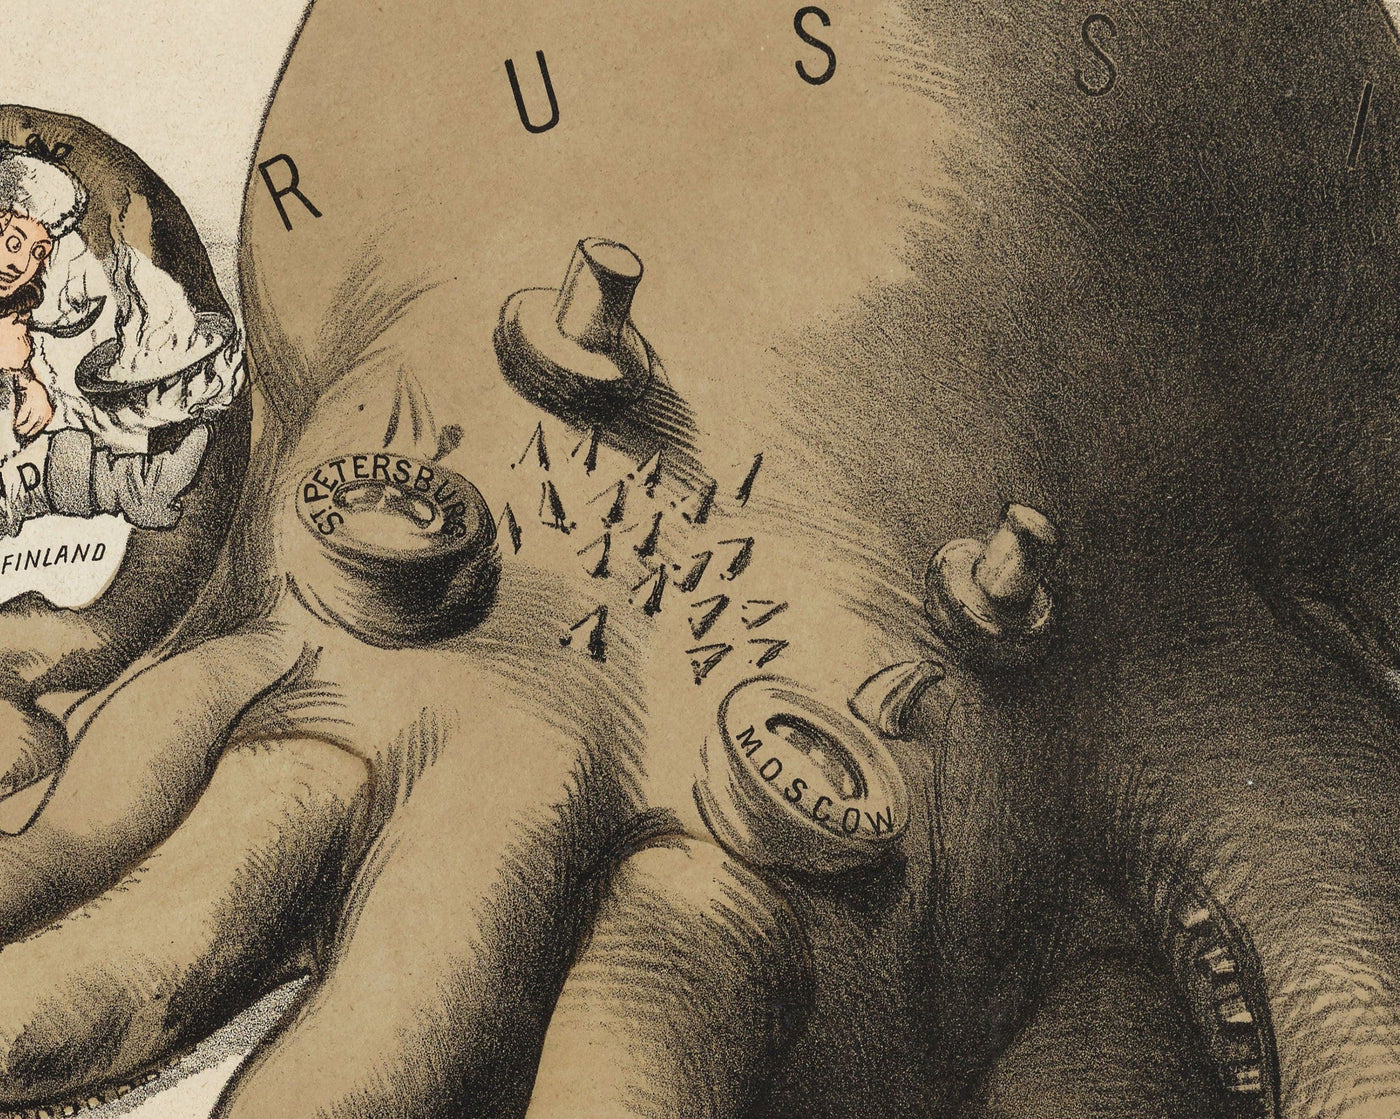 Ancienne carte satirique de l'Europe, 1877 par Fredrick Rose - Propaganda du 19ème siècle Serio-Comic, Octopus russe vs Empires ottomanes